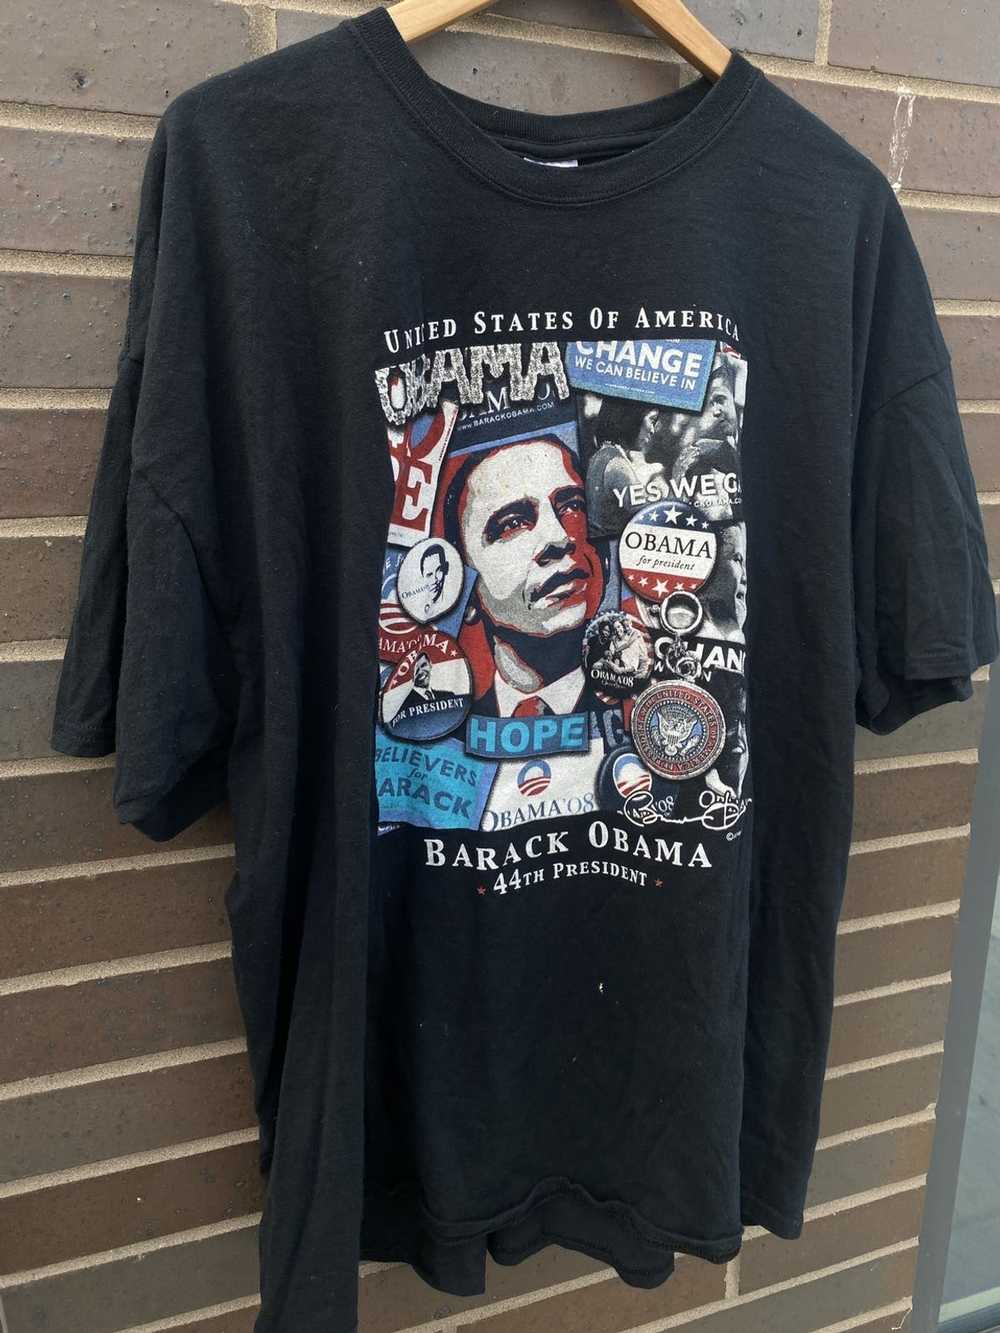 Vintage Vintage 2008 Barack Obama Campaign Shirt - image 7